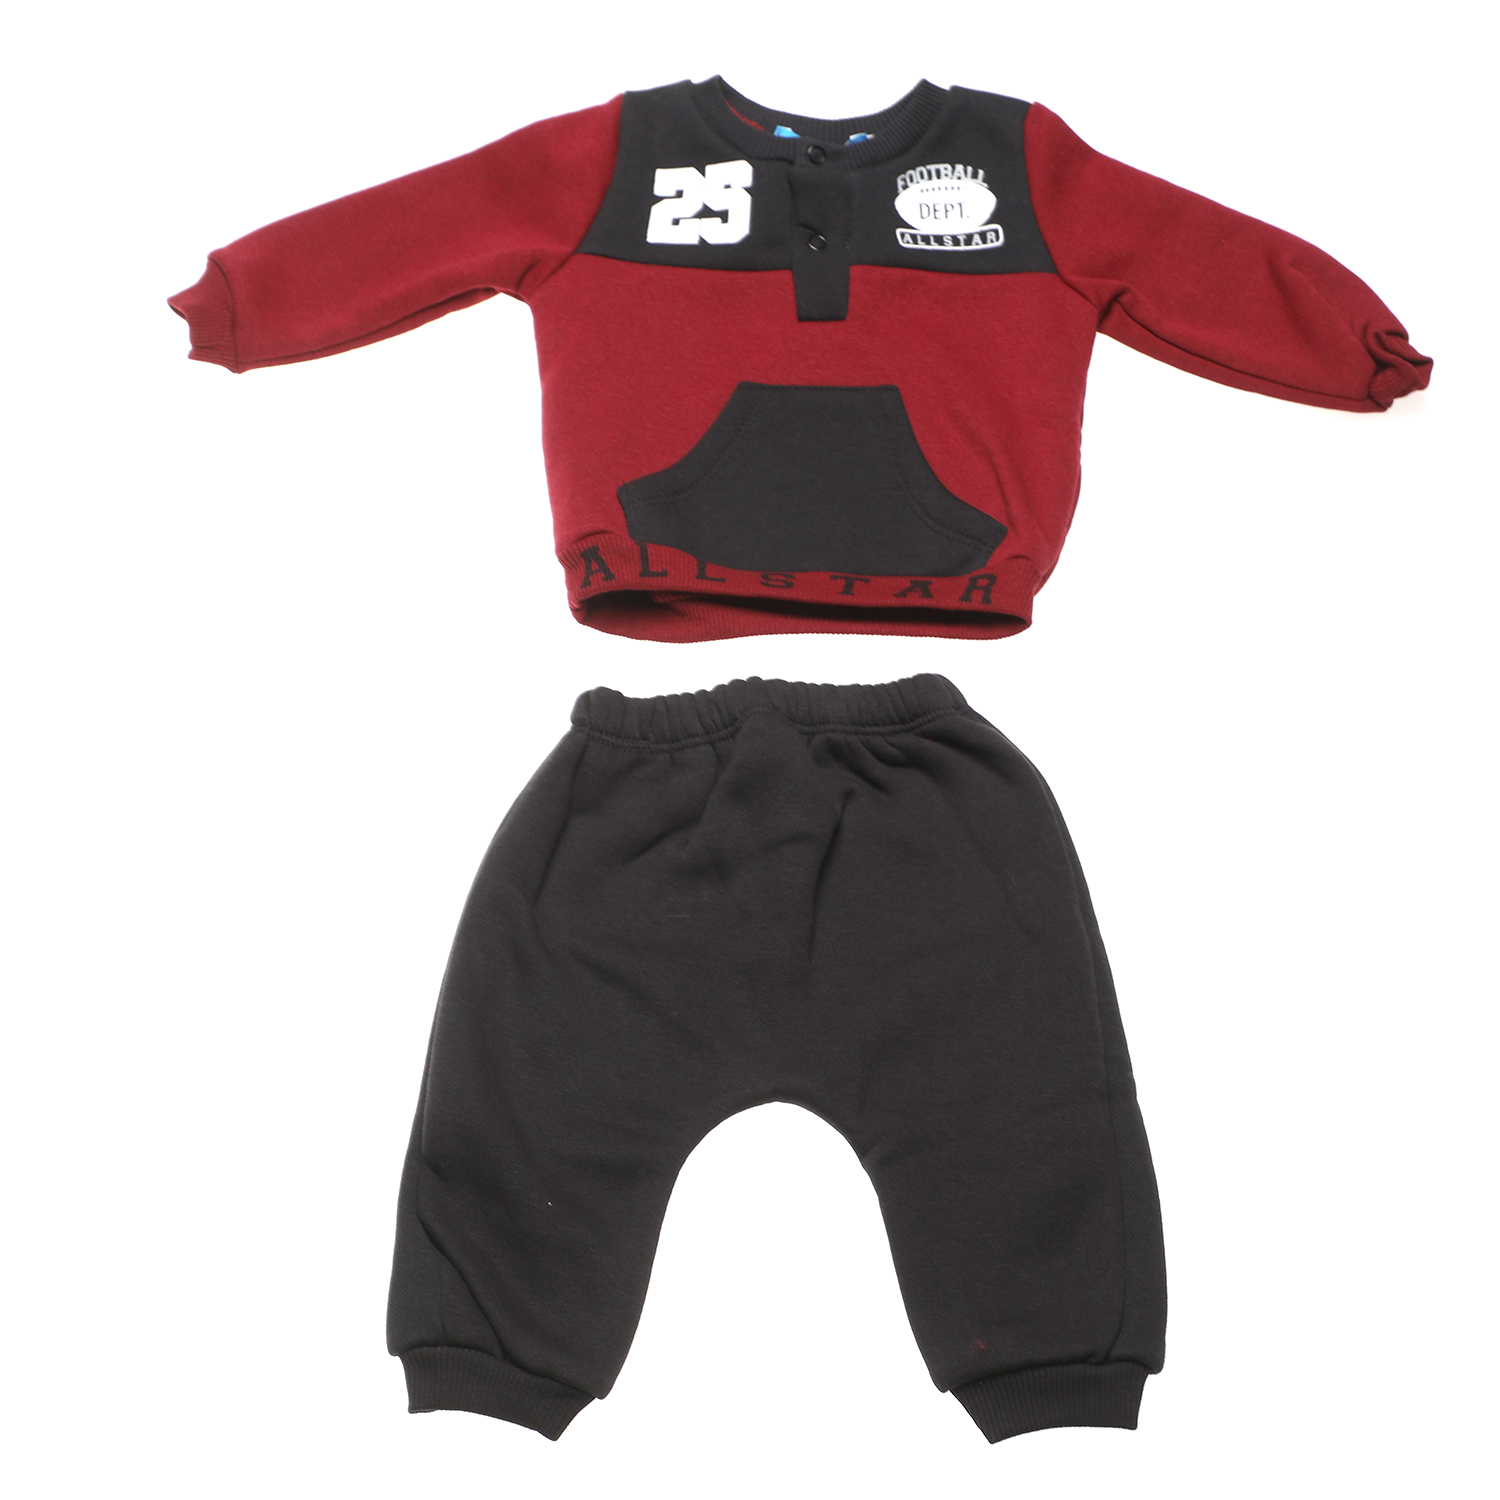 Παιδικά/Baby/Ρούχα/Σετ SAM 0-13 - Βρεφικό σετ φόρμας SAM 0-13 25 FOOTBALL DEPT μαύρο κόκκινο